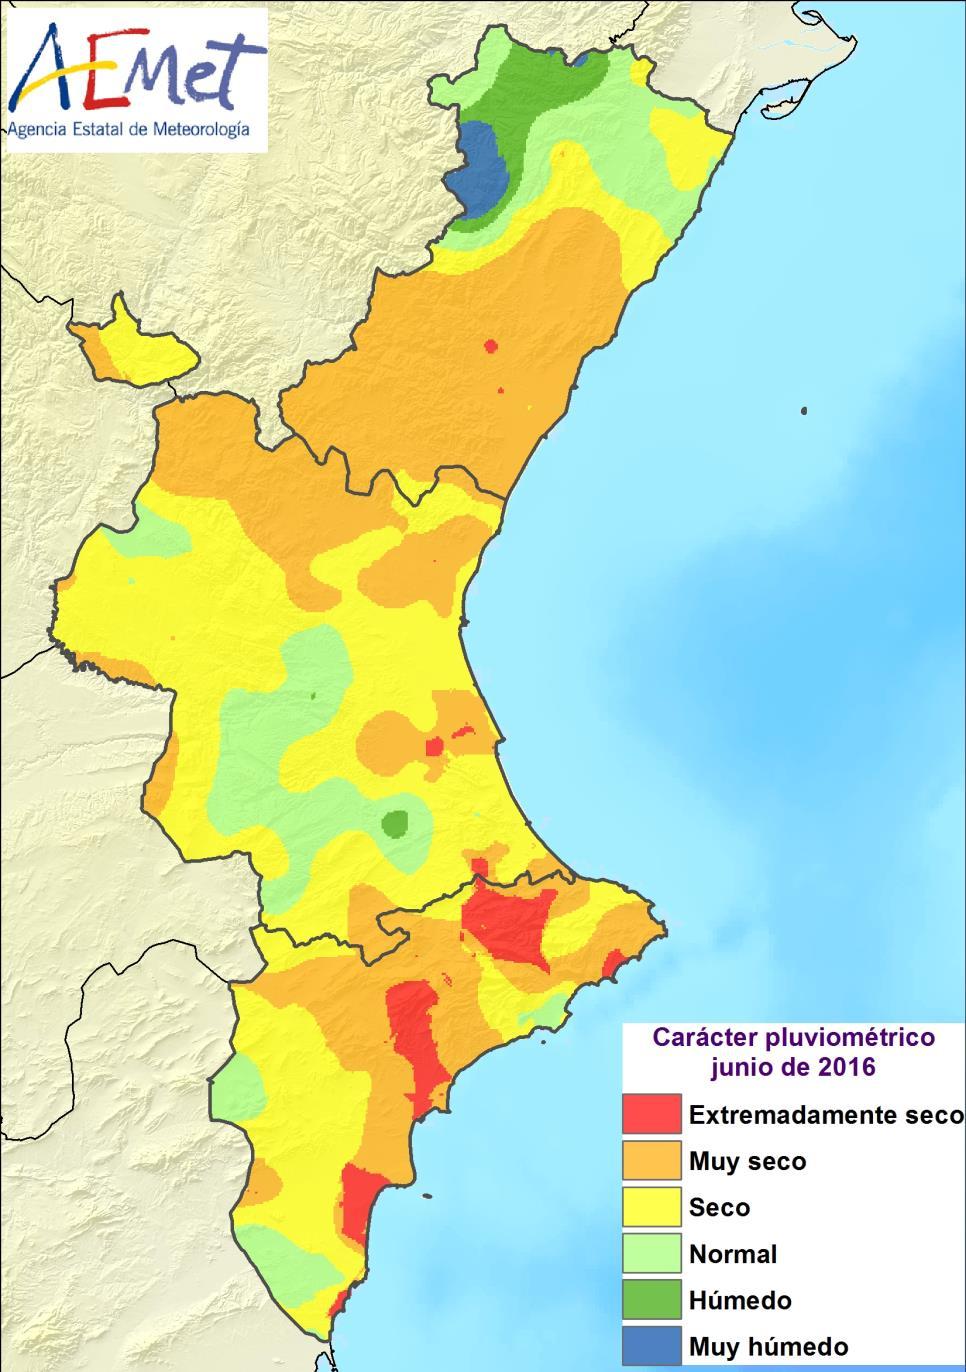 En un 4% del territorio, situado en áreas del litoral de Alicante, junio ha sido extremadamente seco, el más seco de los de la serie de